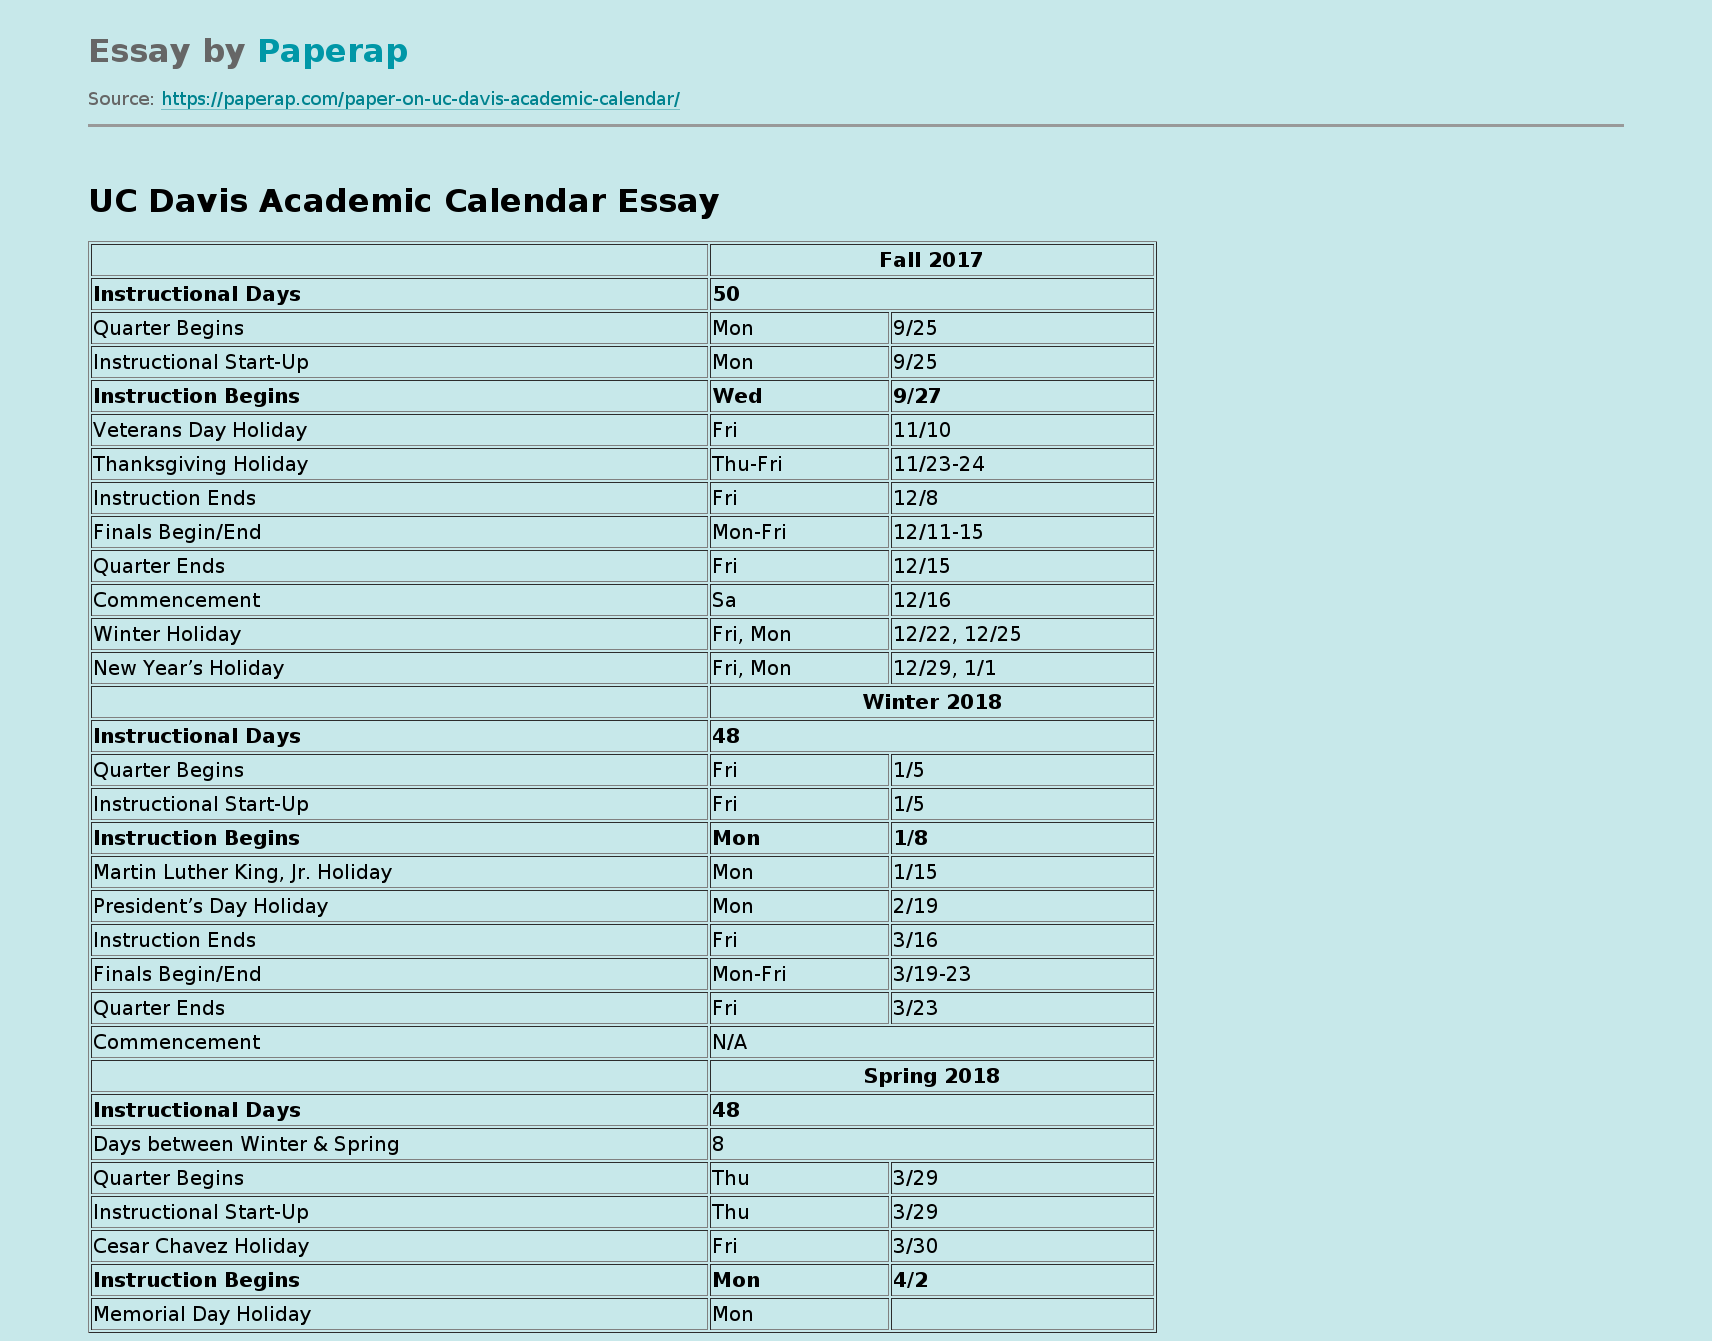 UC Davis Academic Calendar